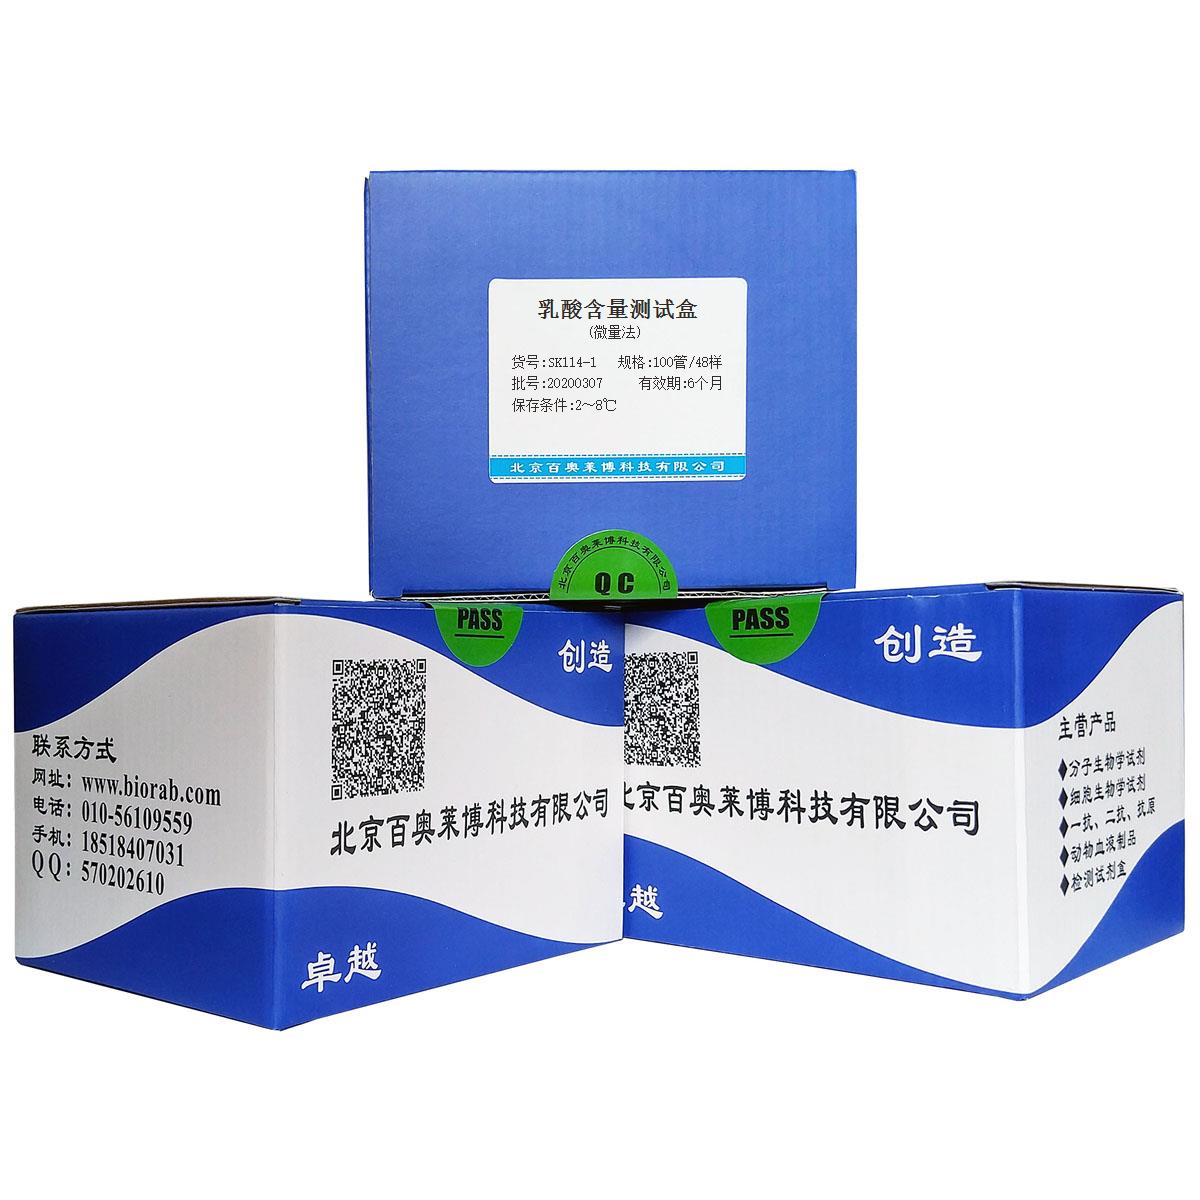 乳酸含量测试盒(微量法)北京厂家